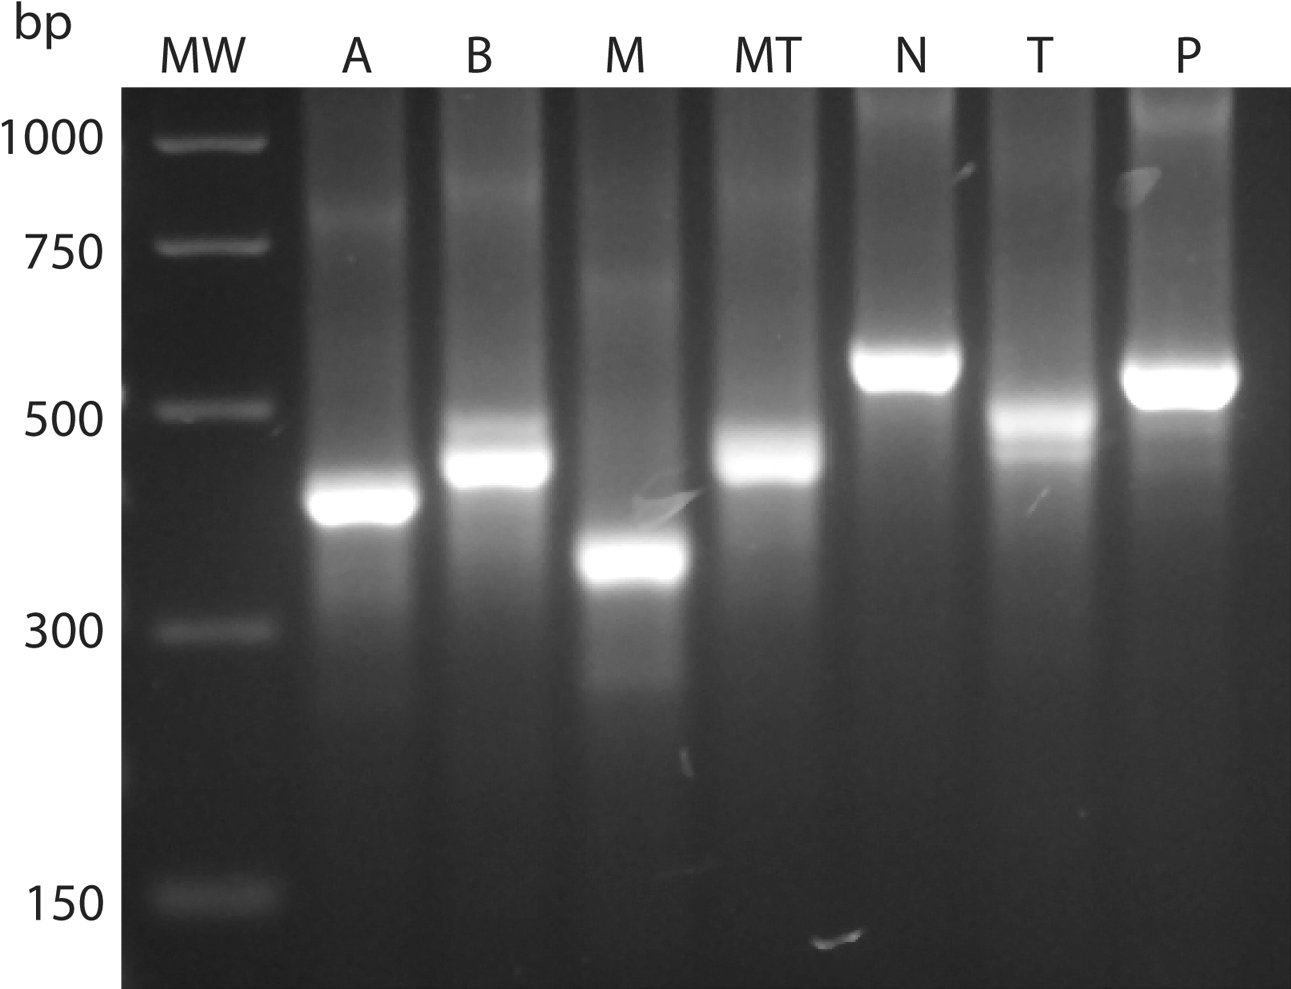 Figure 1.  Agarose gel electrophoresis of PCR products of the ITS-2 gene from different Eimeria species: A, E. acervulina; B, E. brunetti; M, E. maxima; MT, E. mitis; N, E. necatrix; T E. tenella; and P, E. praecox. MW, molecular weight marker (PCR marker; Sigma).